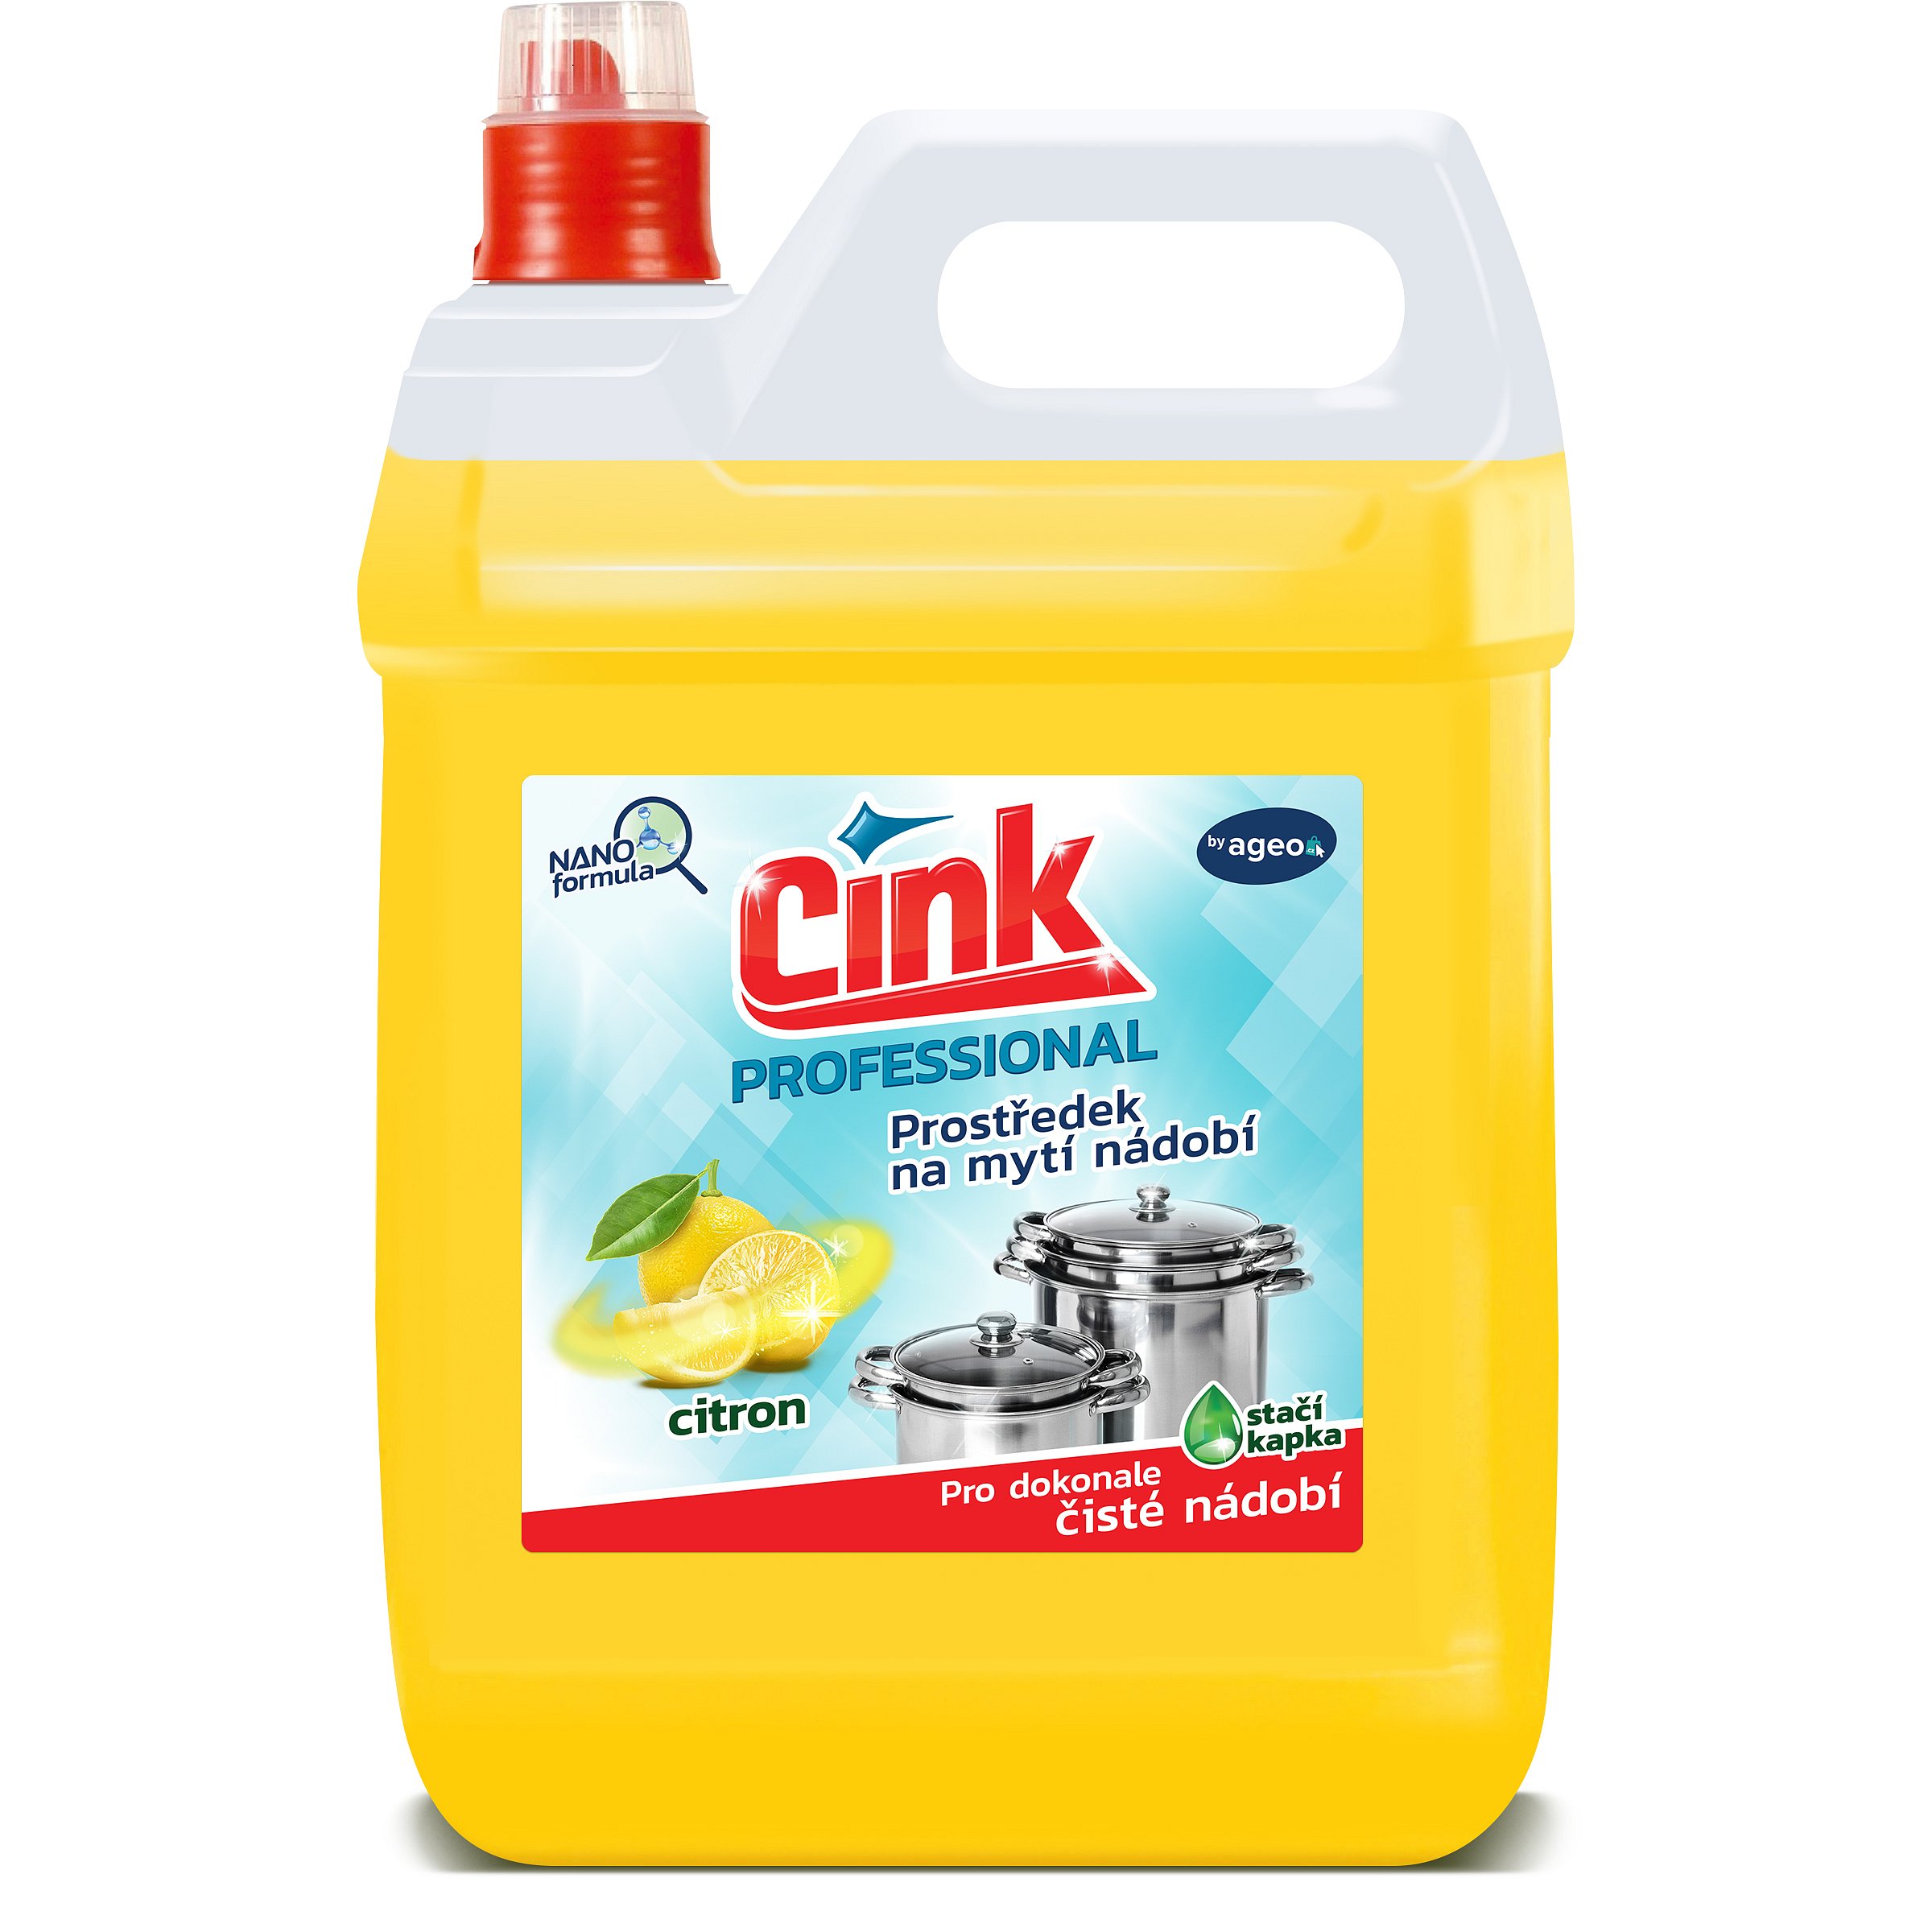 Cink Citron prostředek na mytí nádobí 5 l